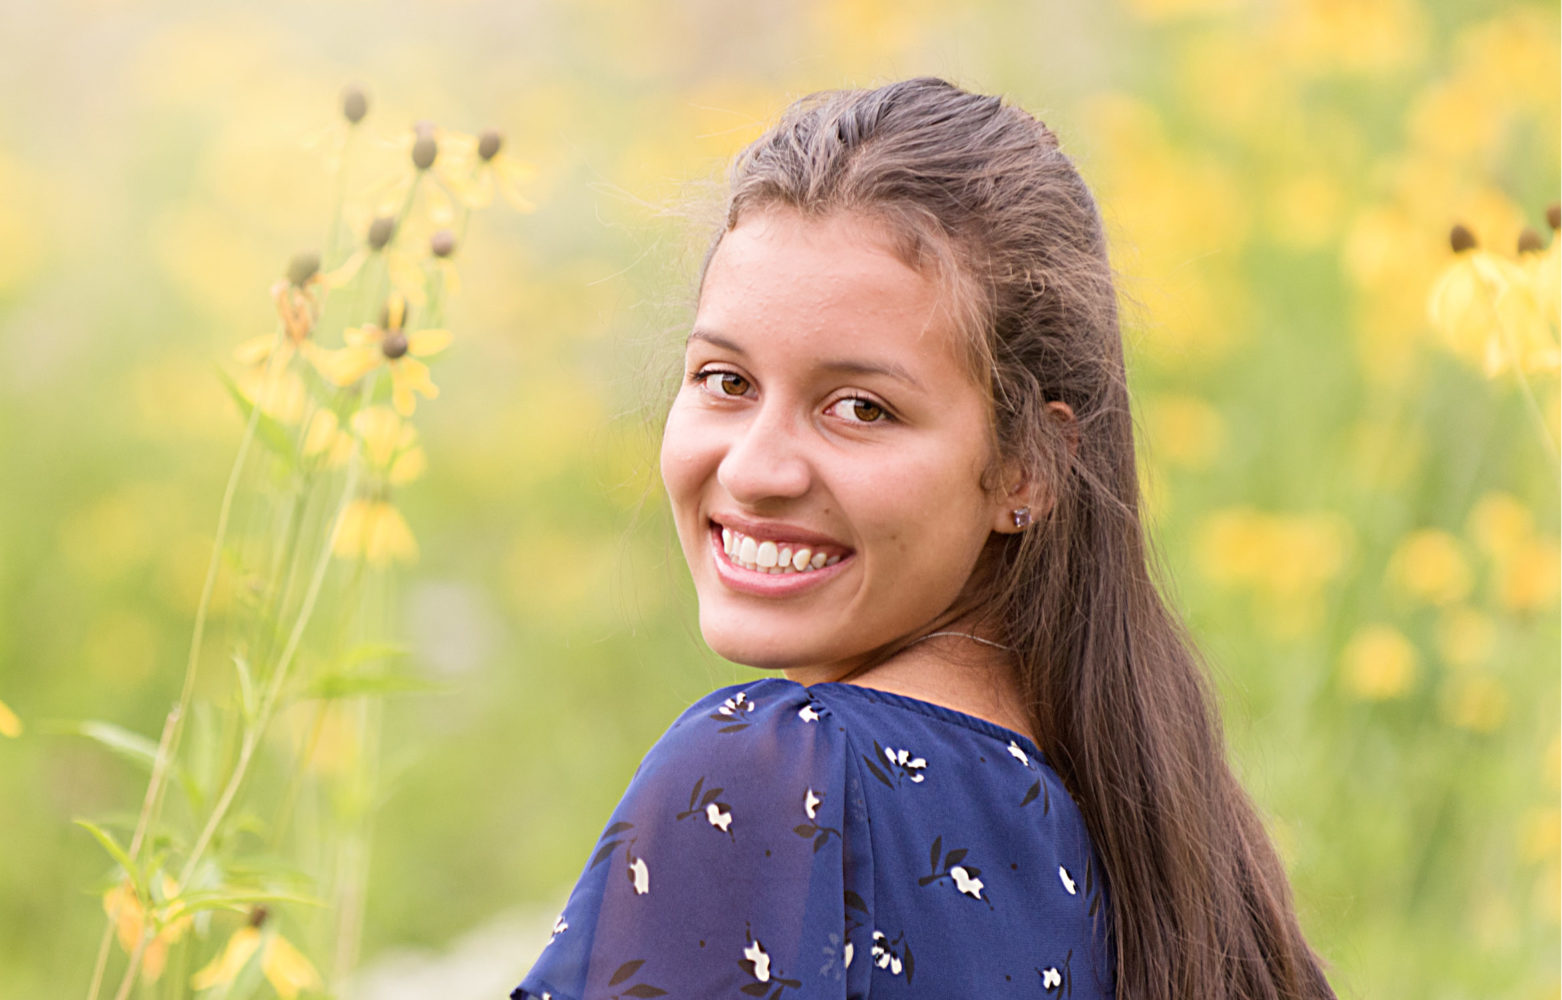 senior girl in daisy field